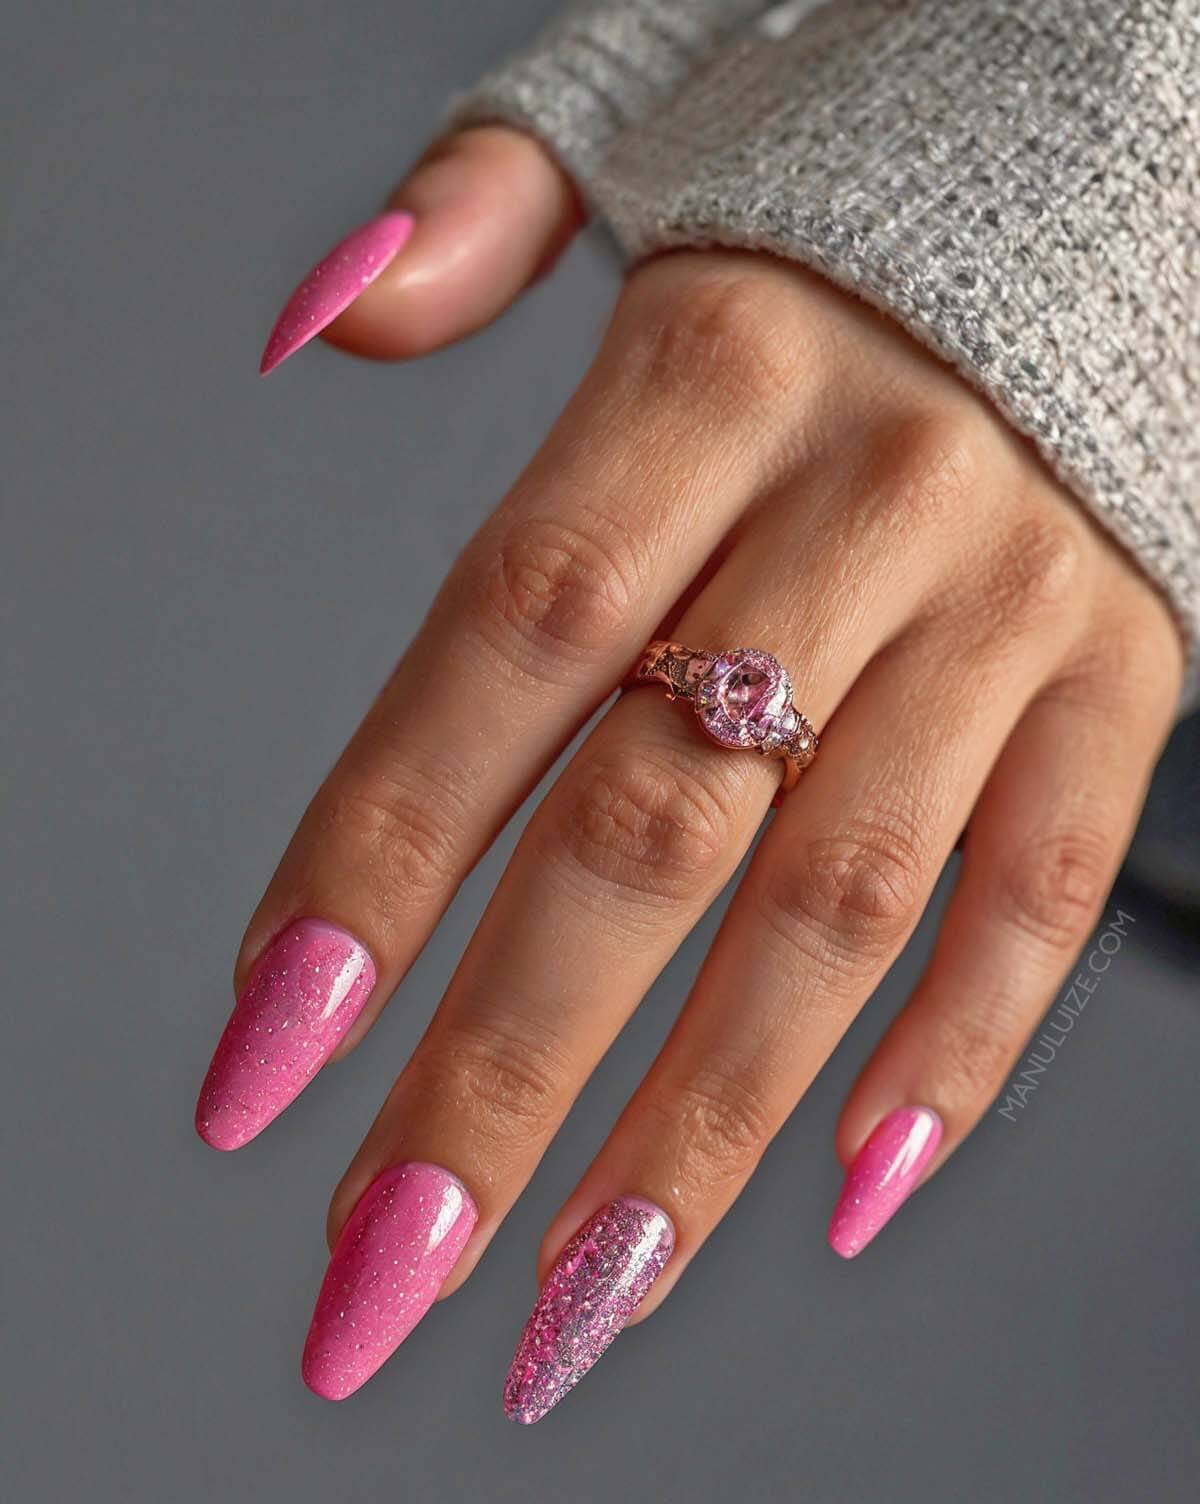 Hot pink glitter manicure